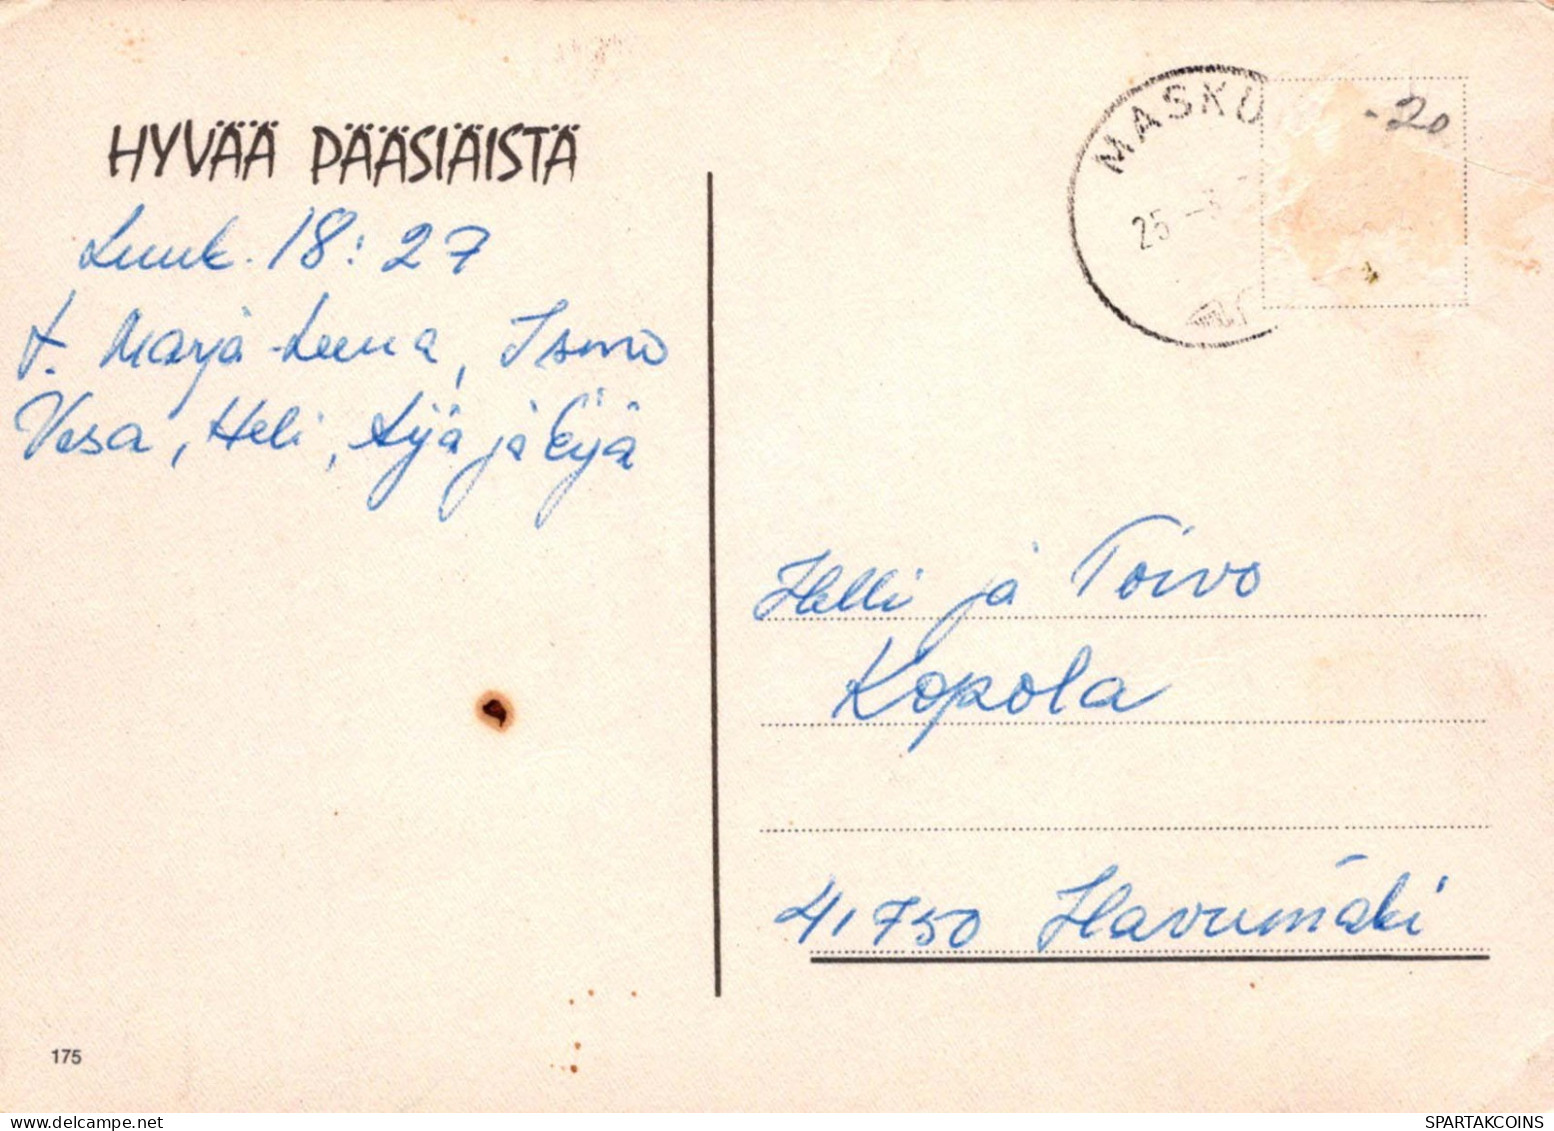 PASQUA POLLO UOVO Vintage Cartolina CPSM #PBO763.A - Ostern